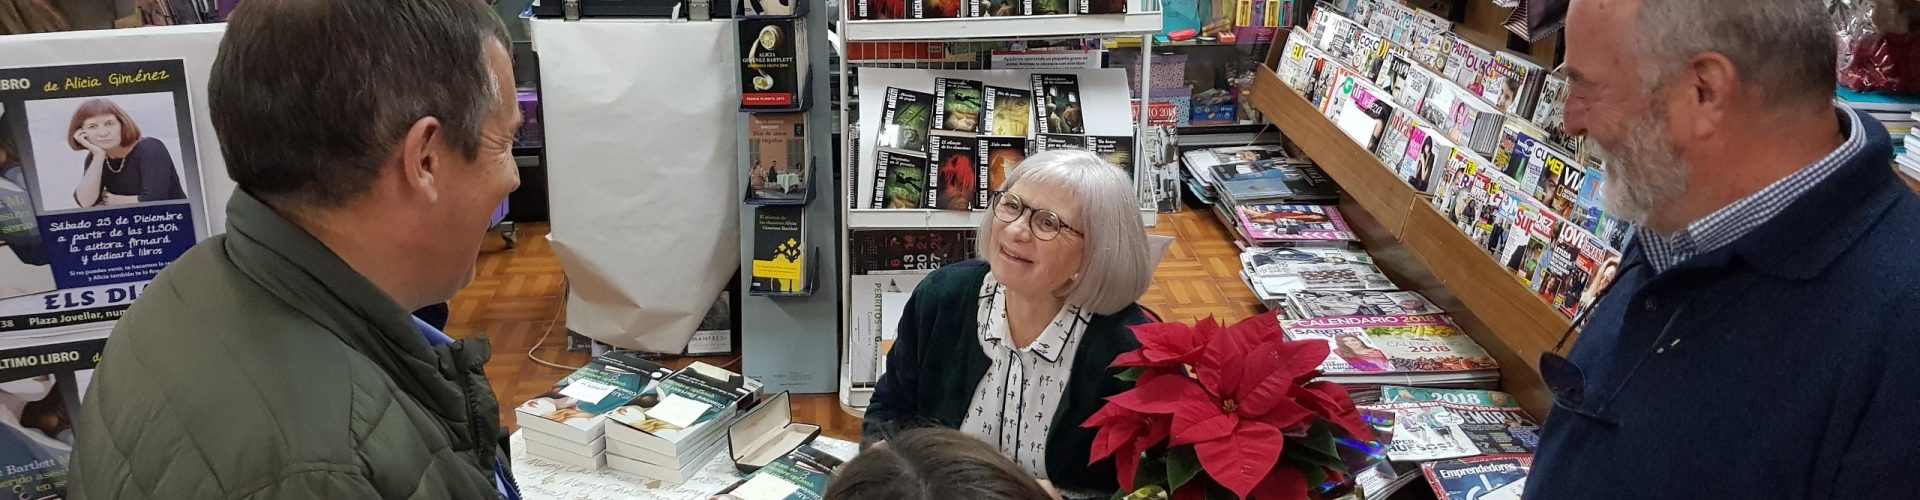 Alícia Giménez Bartlett signa llibres a Els Diaris